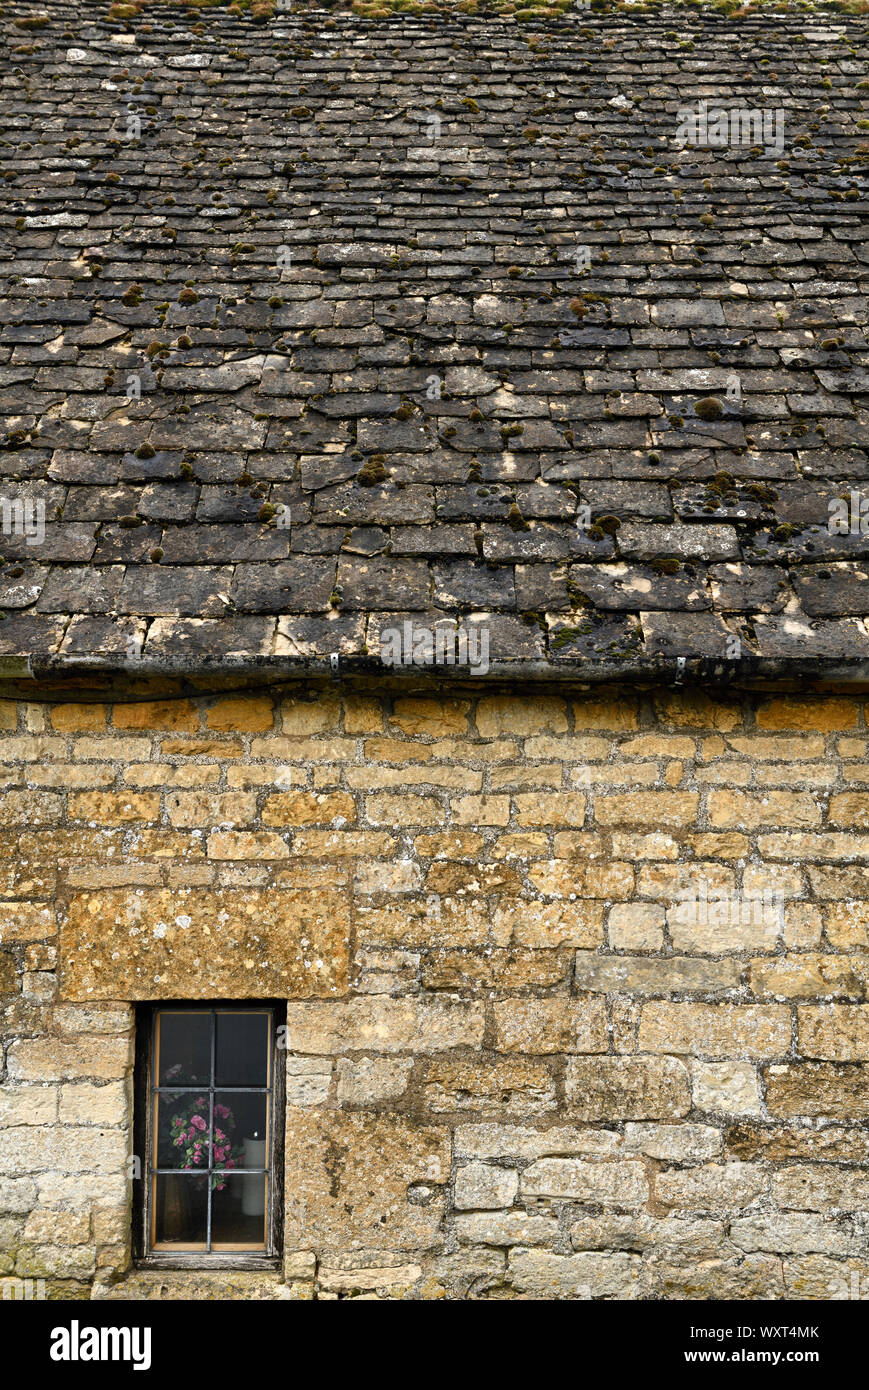 Mur de pierre calcaire jaune Cotswold House avec un toit en ardoise et fenêtre avec des fleurs dans le Gloucestershire Angleterre Snowshill Banque D'Images